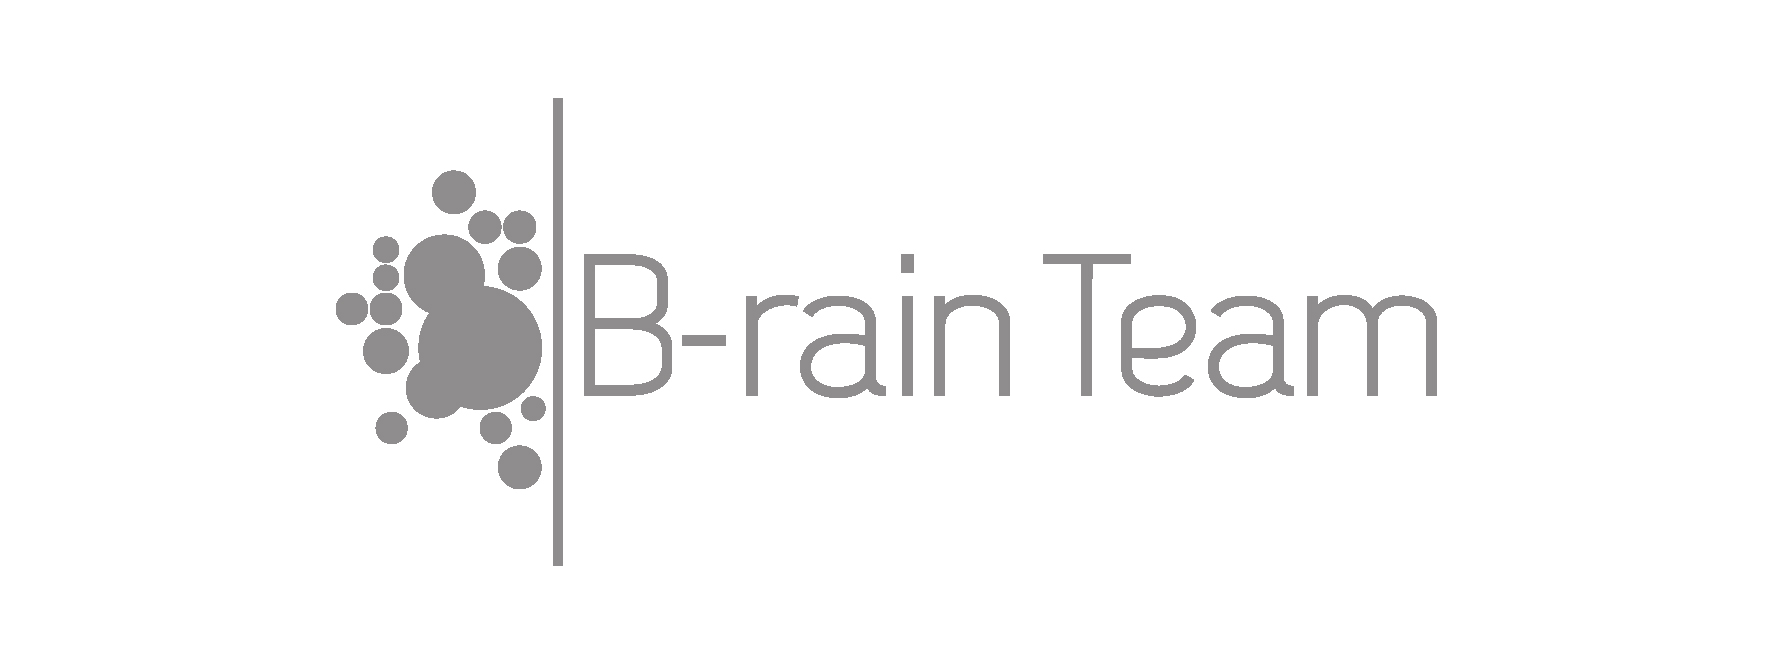 brain team